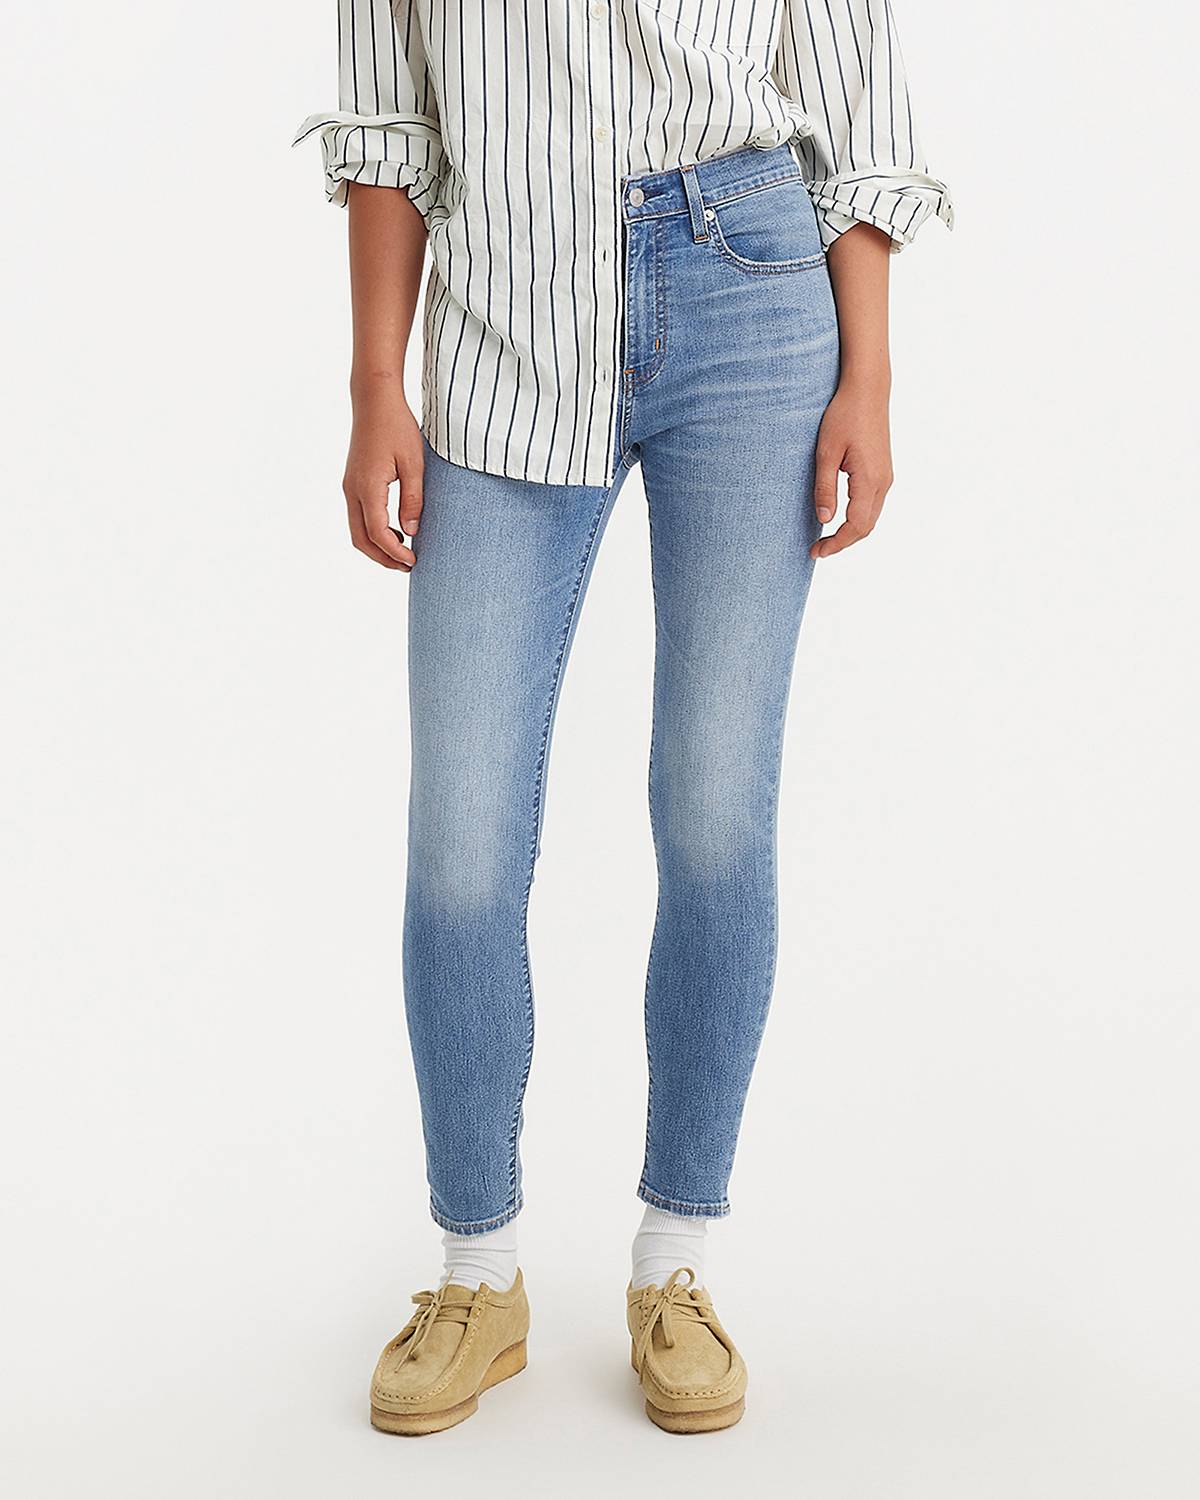 Female model wearing skinny fit jeans.